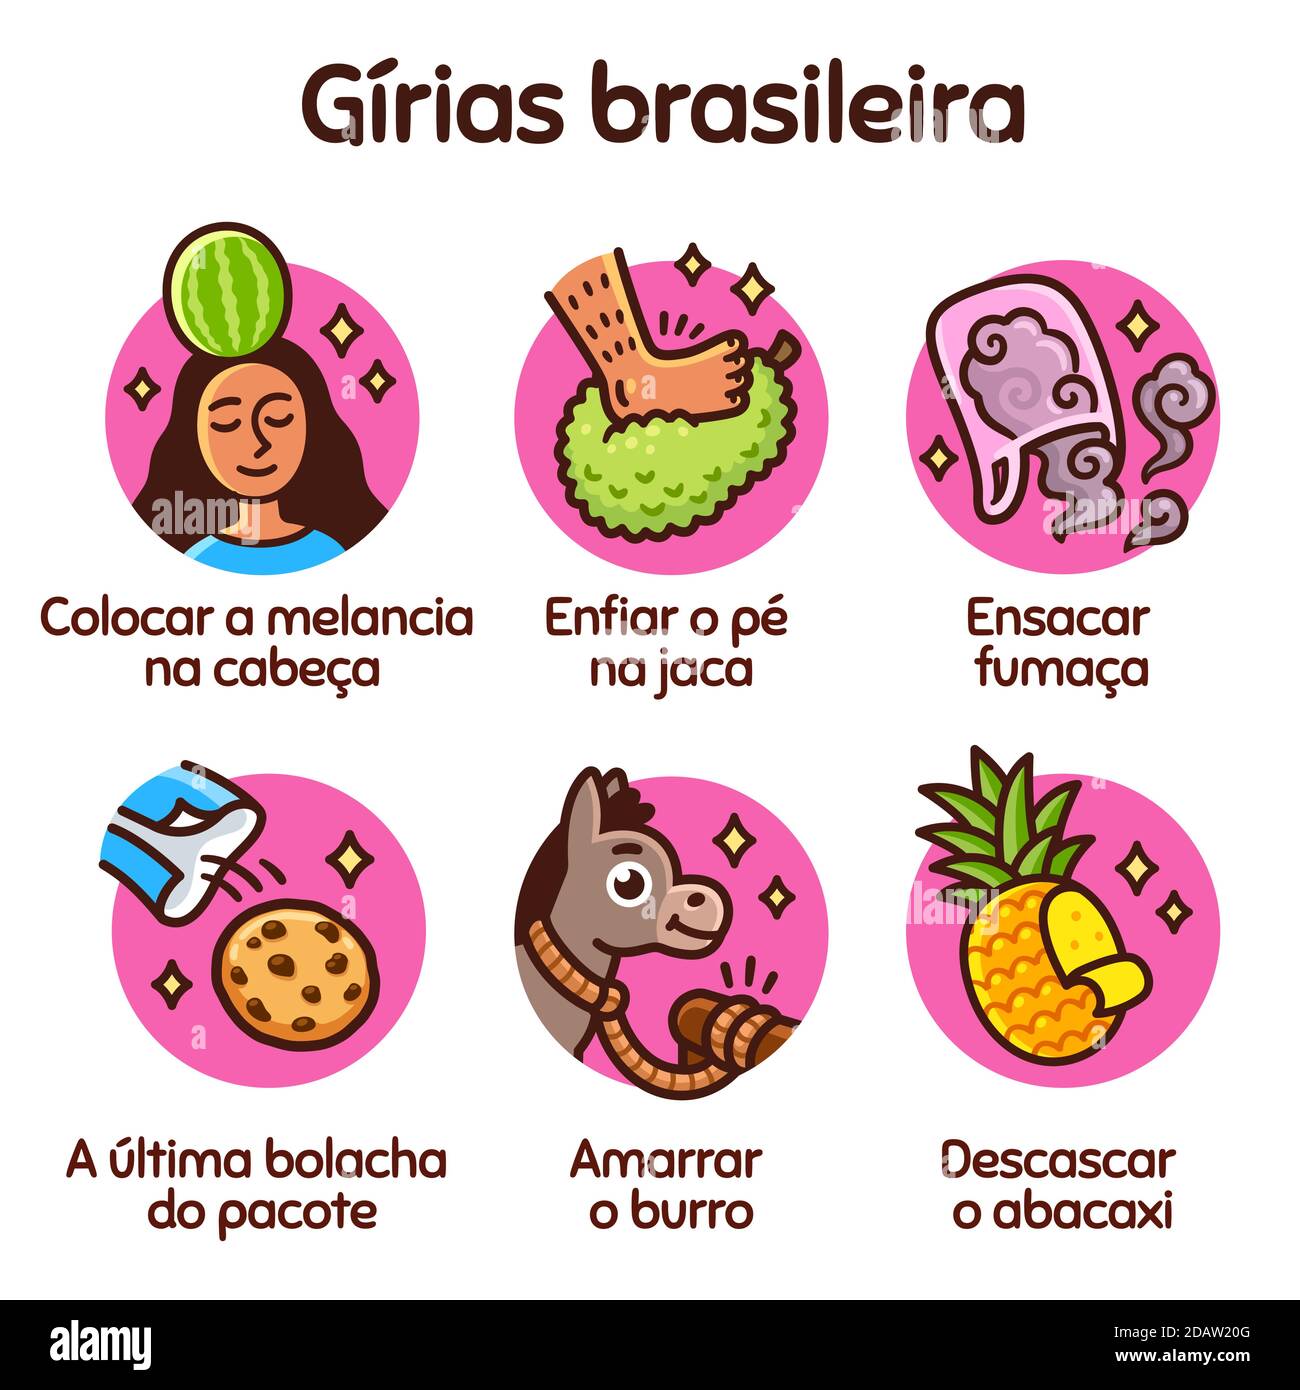 Cartoon-Zeichnung von brasilianischen Slang Ausdrücke in ihrer wörtlichen Bedeutung. Lustige Vektor Illustration Set. Stock Vektor